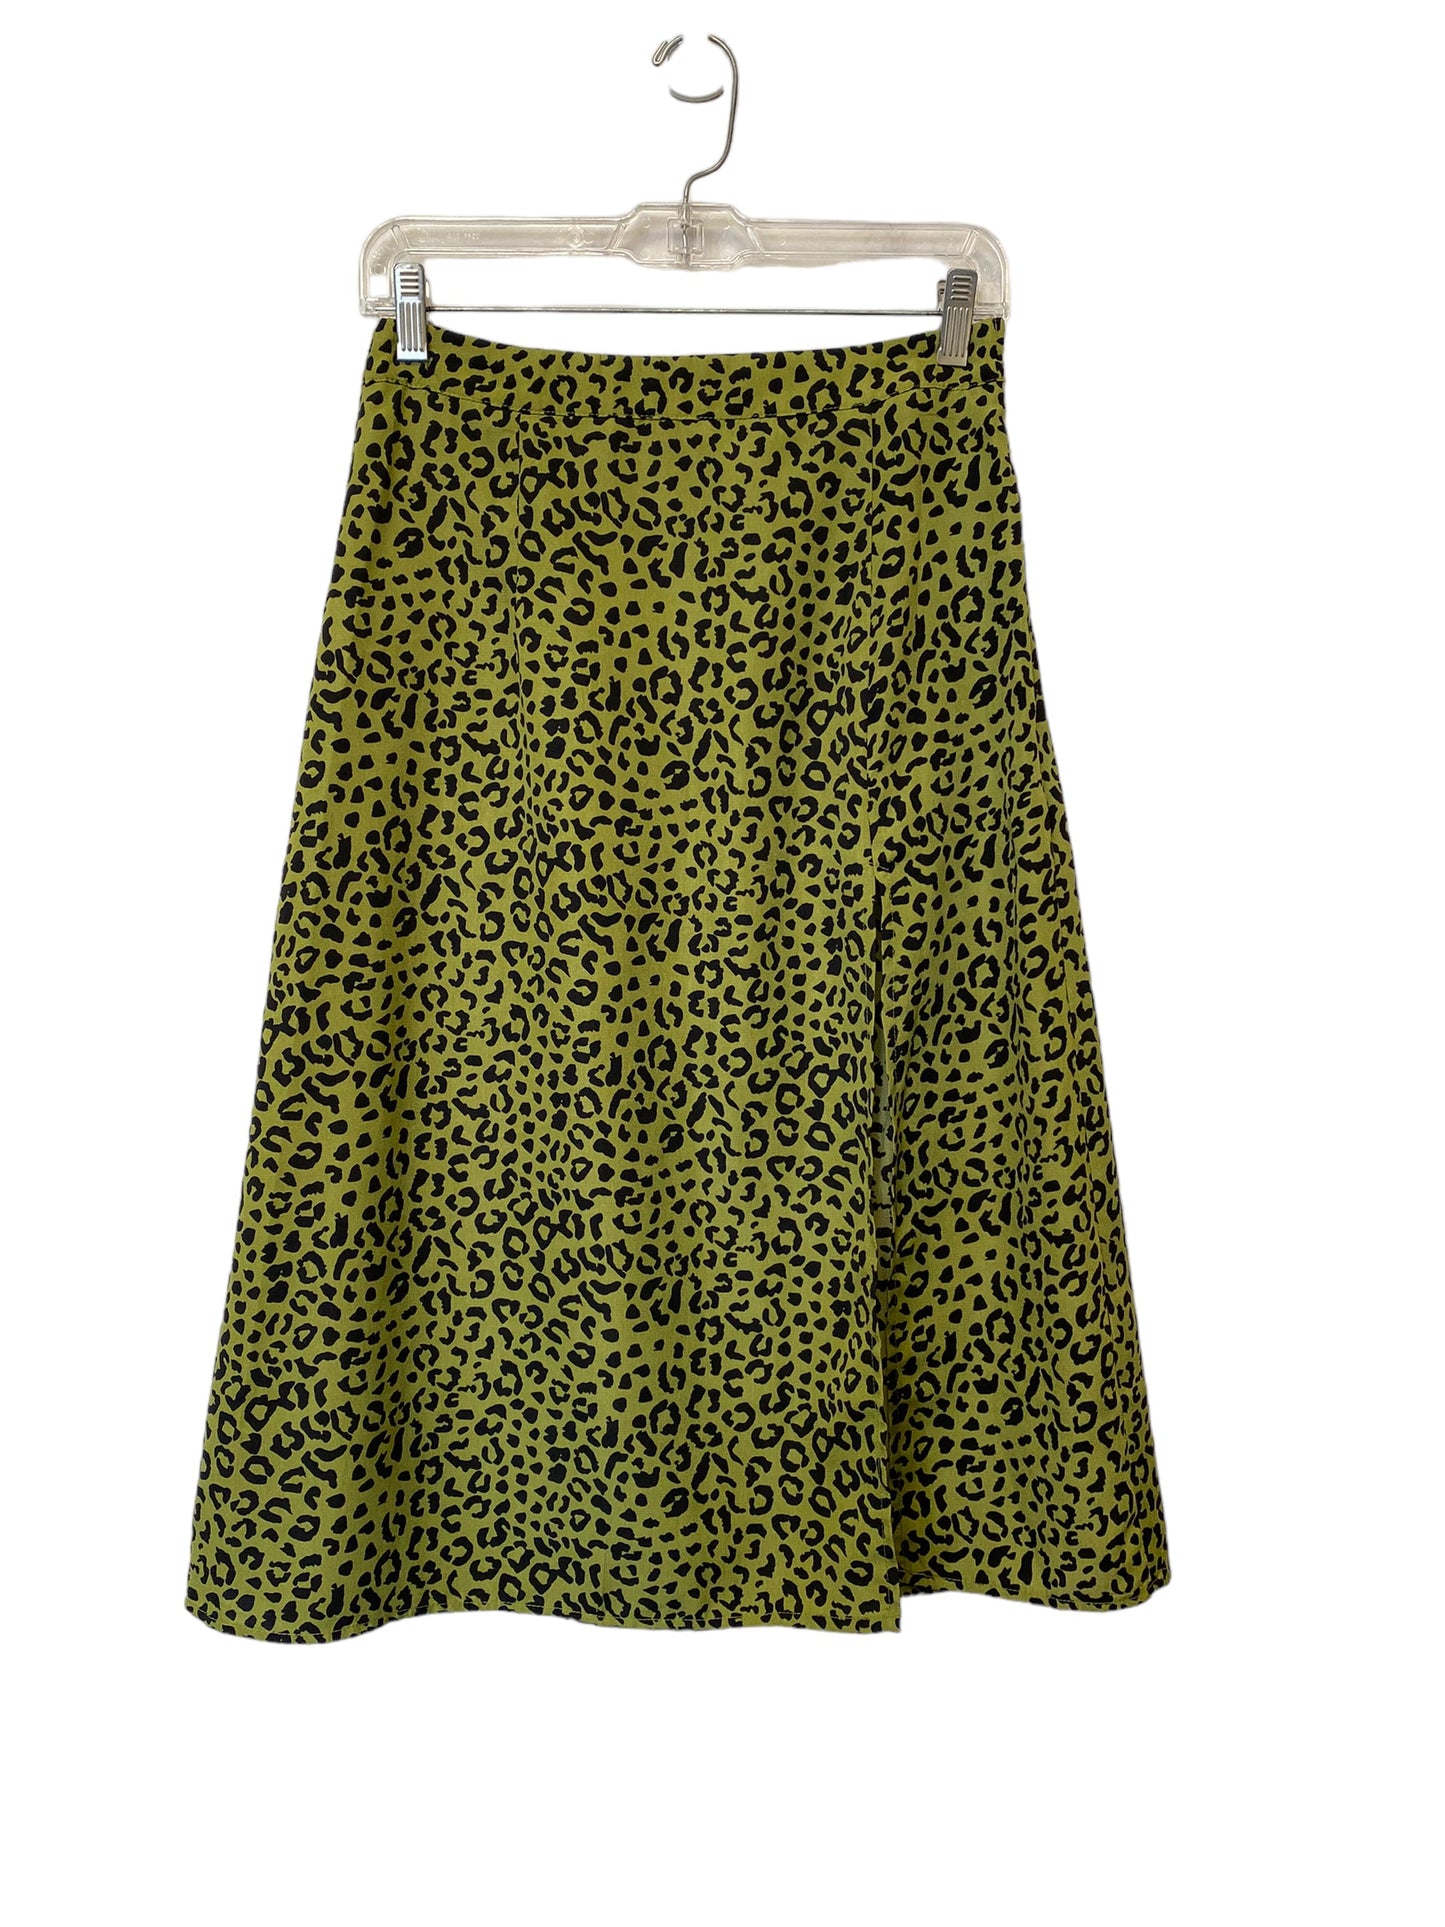 Skirt Midi By Shein  Size: S